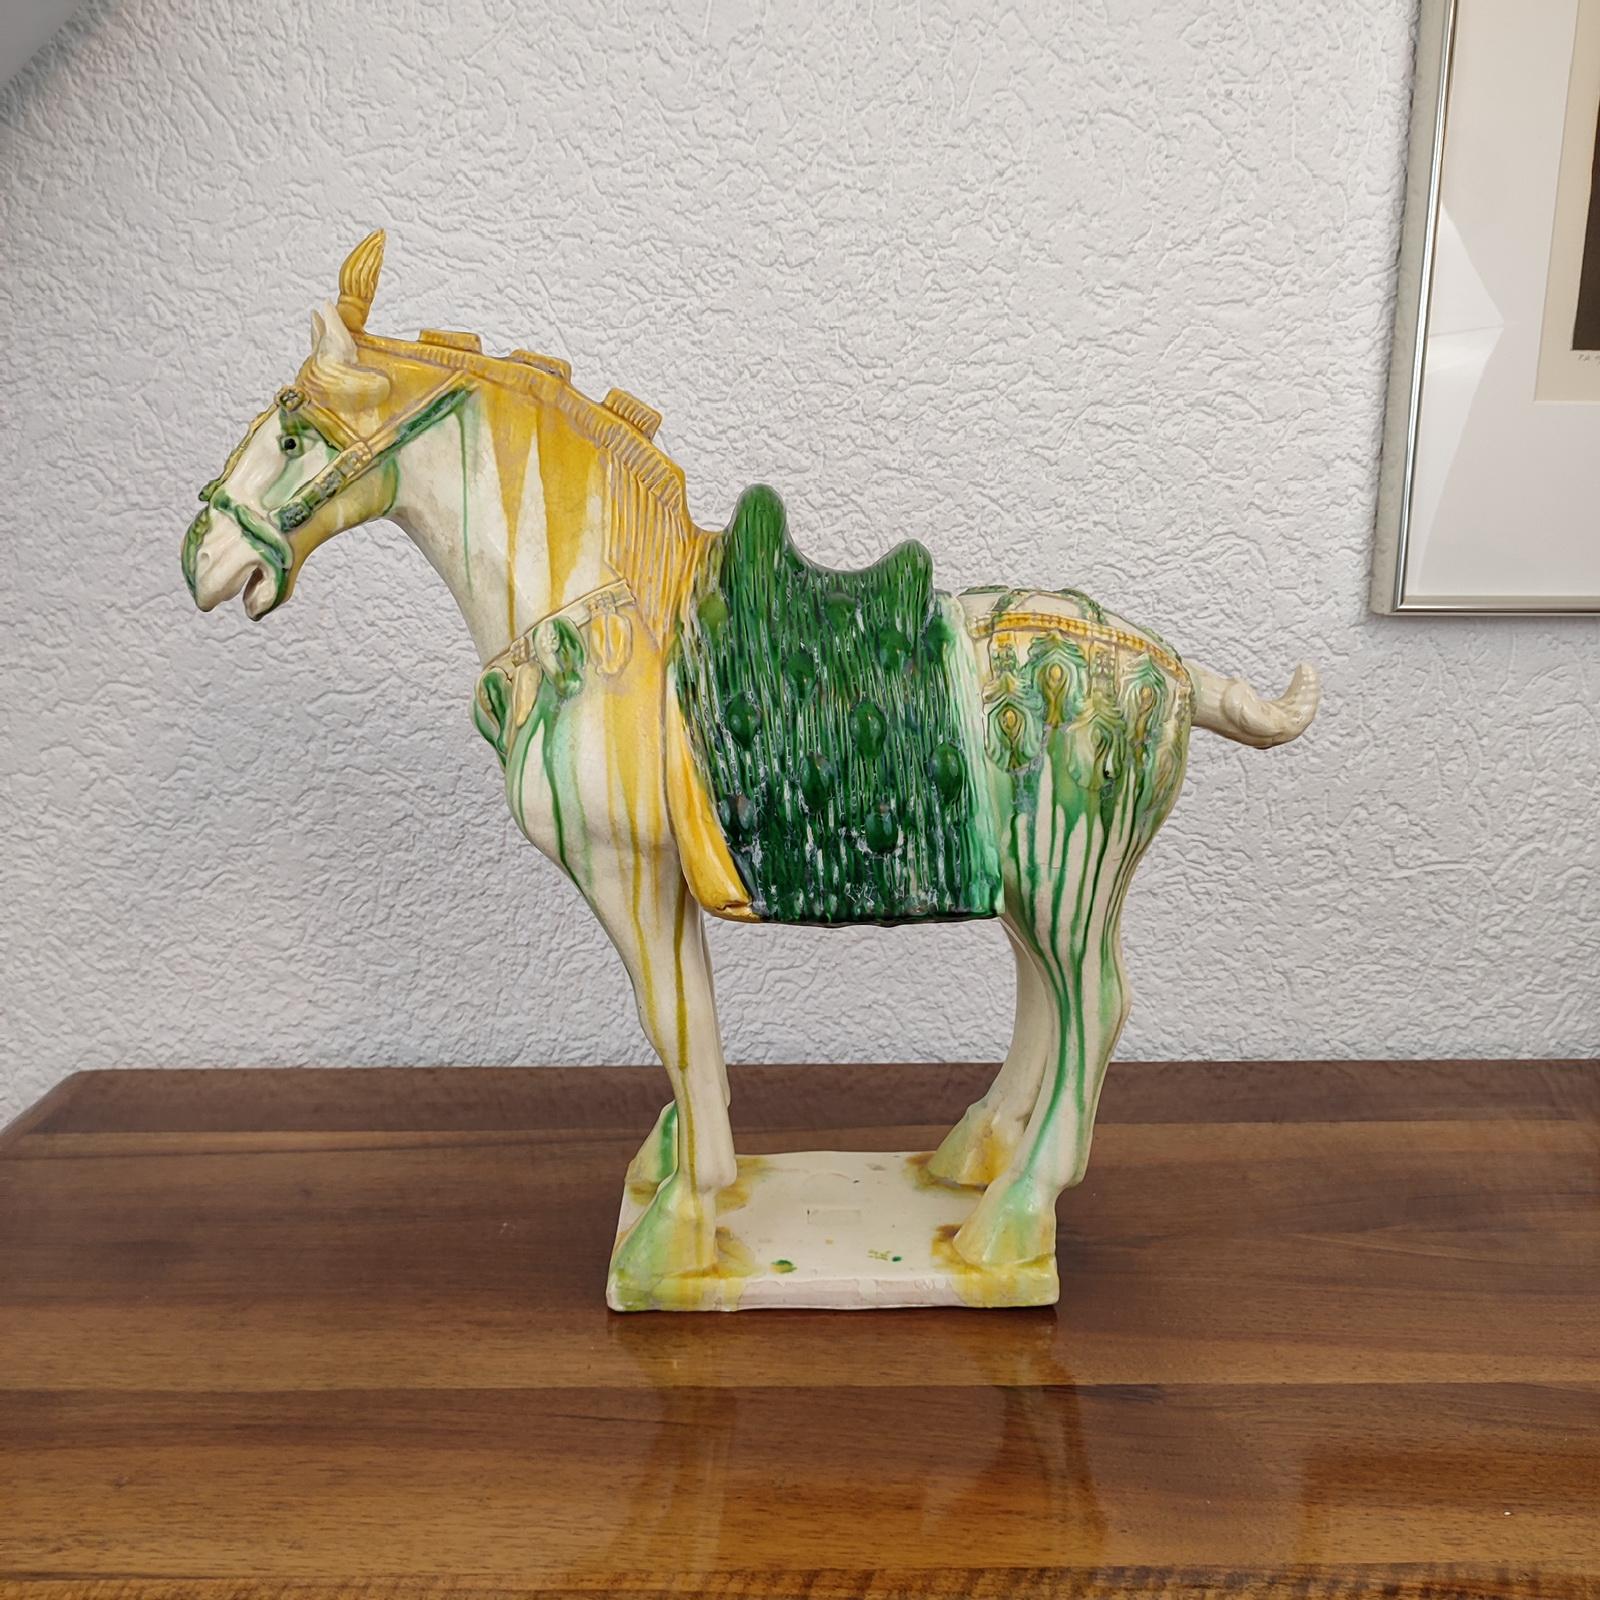 Chinesische Sancai-glasierte Keramik-Statue eines Pferdes, das auf allen vier Beinen auf einem rechteckigen Sockel steht. Das Pferd ist mit Glocken und Blumen geschmückt. Ein traditioneller grüner Sattel vervollständigt den Look. Unleserliche